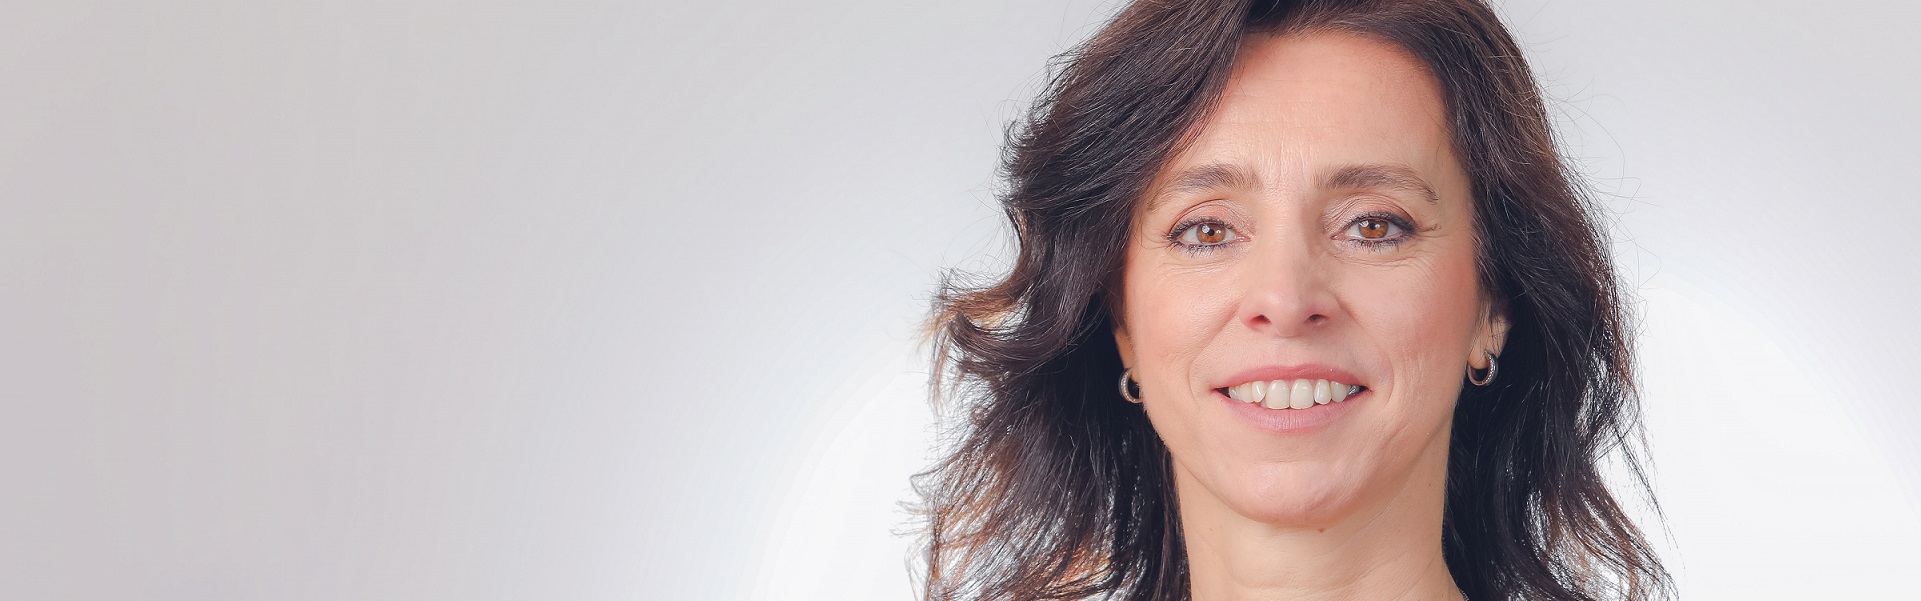 Claudia Boeri, presidente de SAP para Región Sur, encabeza ranking de mujeres líderes en el país